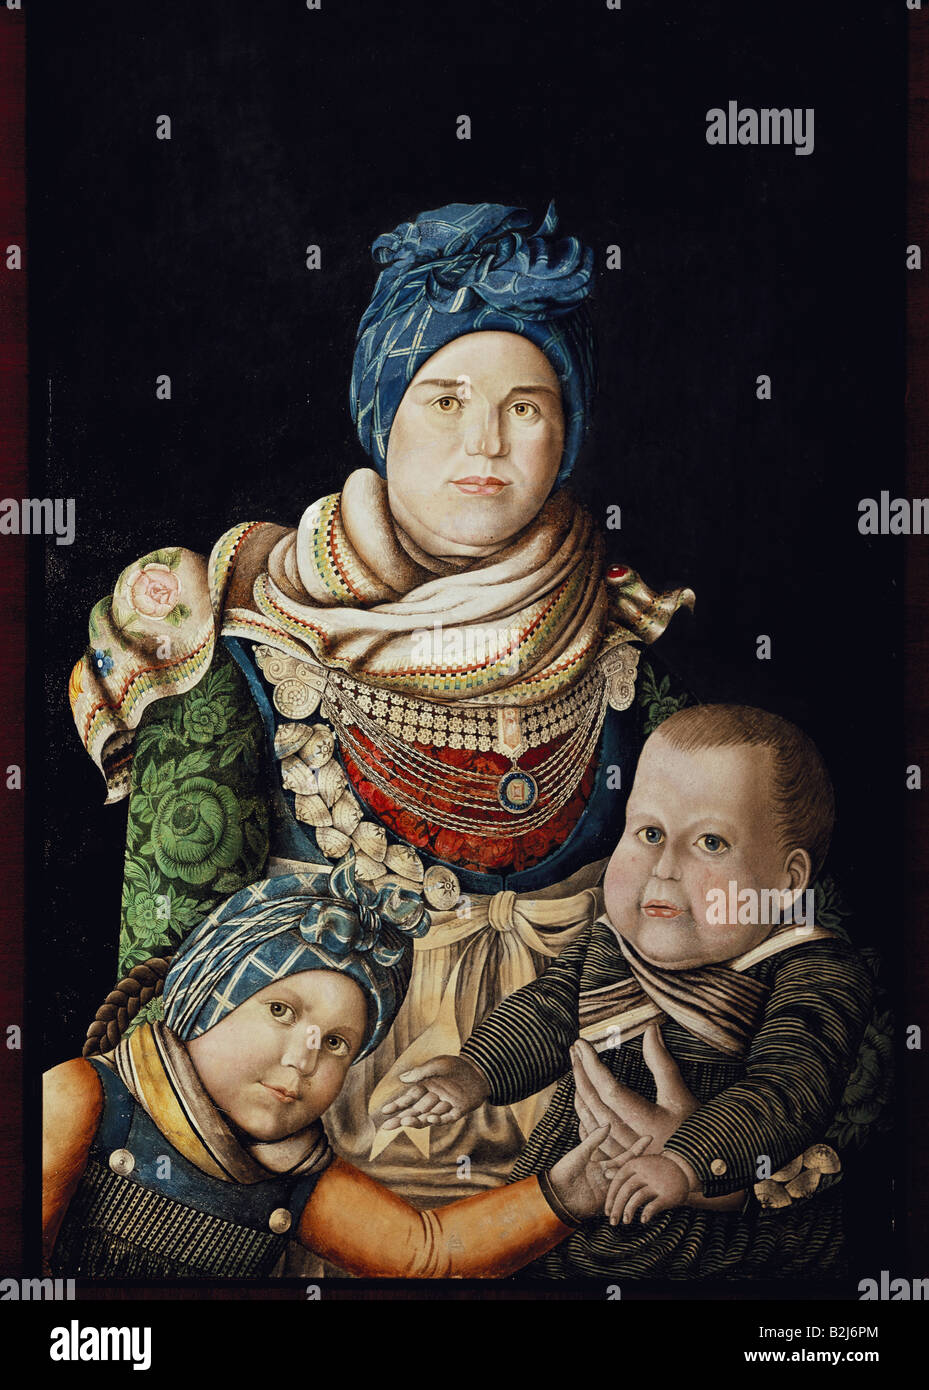 Beaux-arts, Braren Oluf, (1787 - 1839), la peinture 'Ing Peter Matzen avec enfants", aquarelle sur papier, 37,5 cm x 24 cm, en Allemagne, début du xixe siècle, de l'Académie des beaux-arts, Hambourg, n'a pas d'auteur de l'artiste pour être effacé Banque D'Images